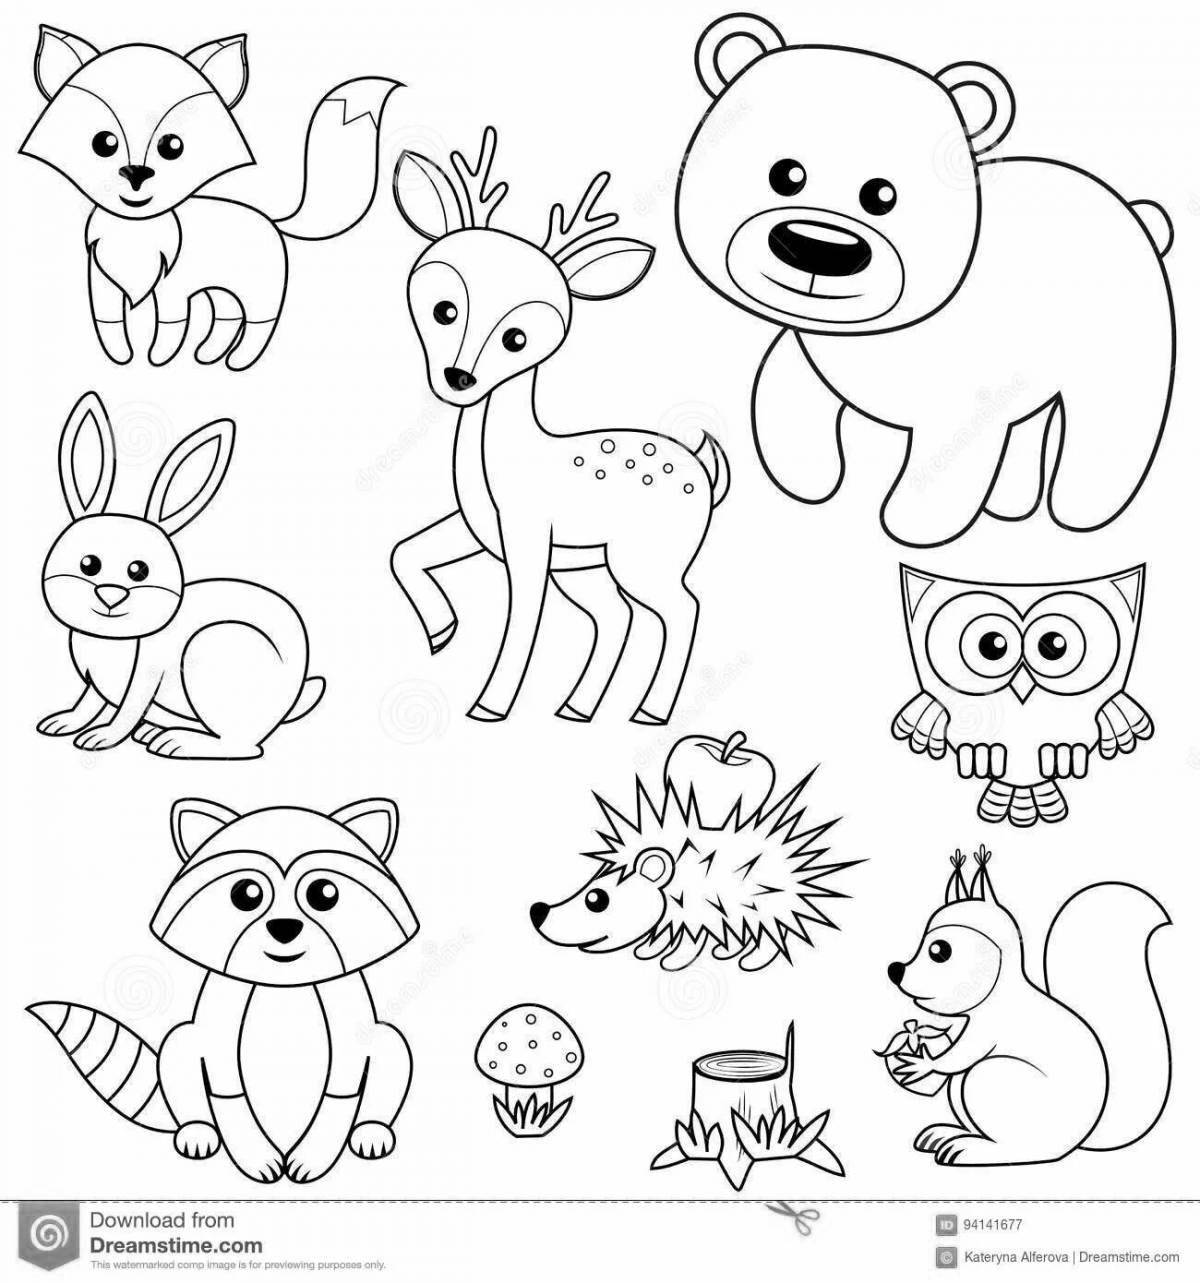 Великолепная страница раскраски лесных животных для детей 4-5 лет